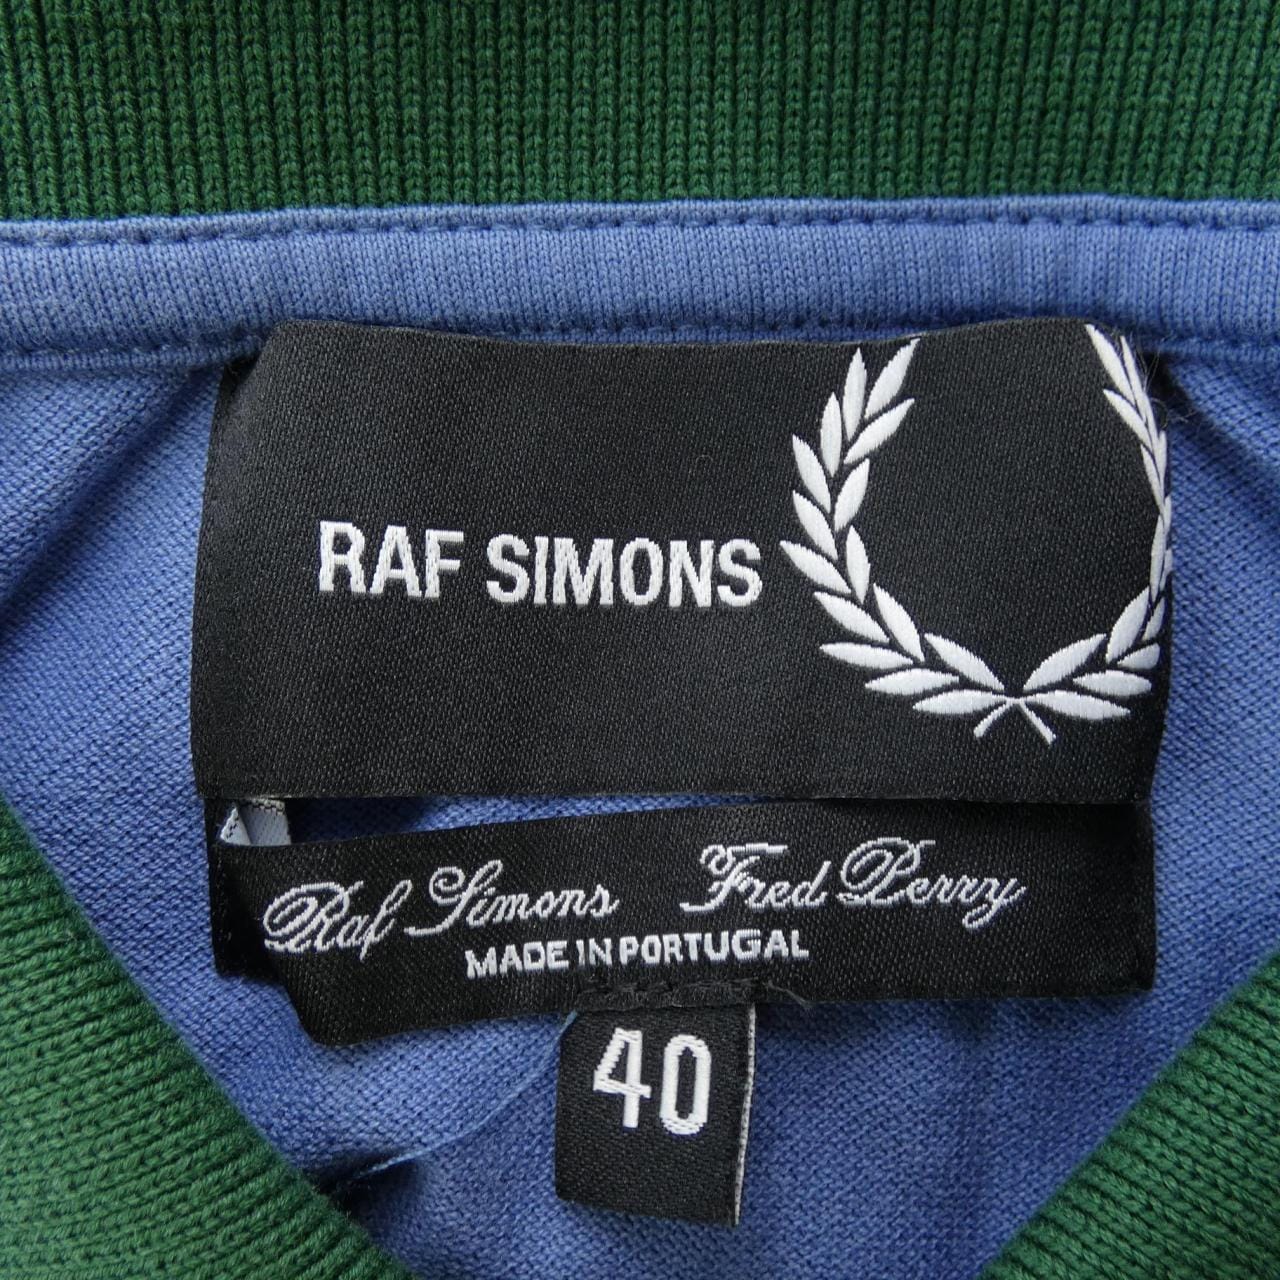 RAF SIMONS SIMONS polo shirt